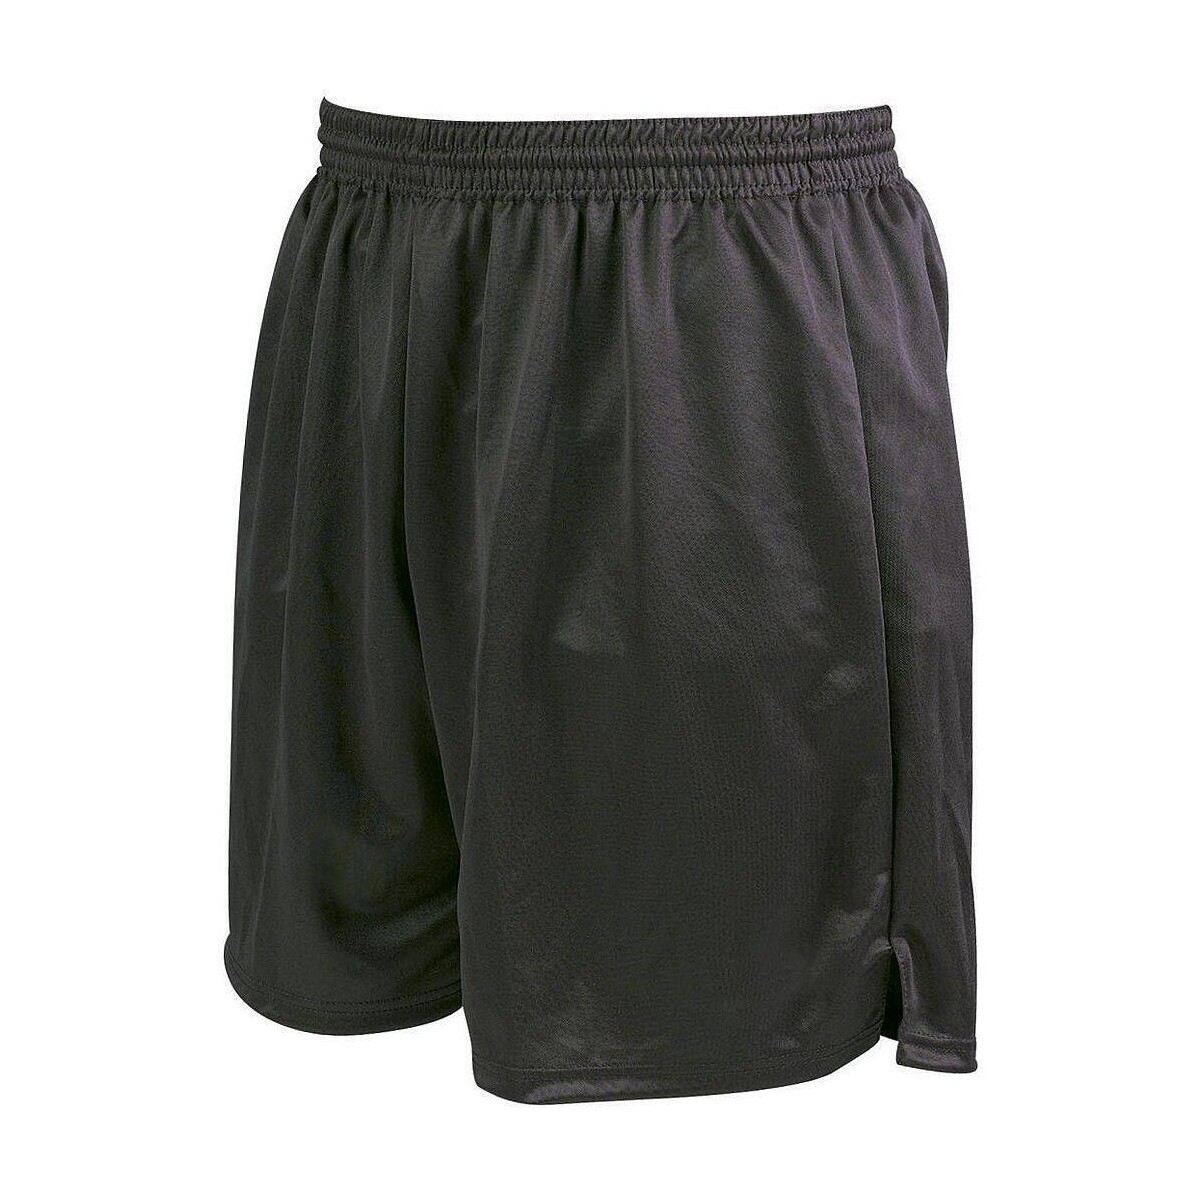 Vêtements Enfant Shorts / Bermudas Precision Attack Noir